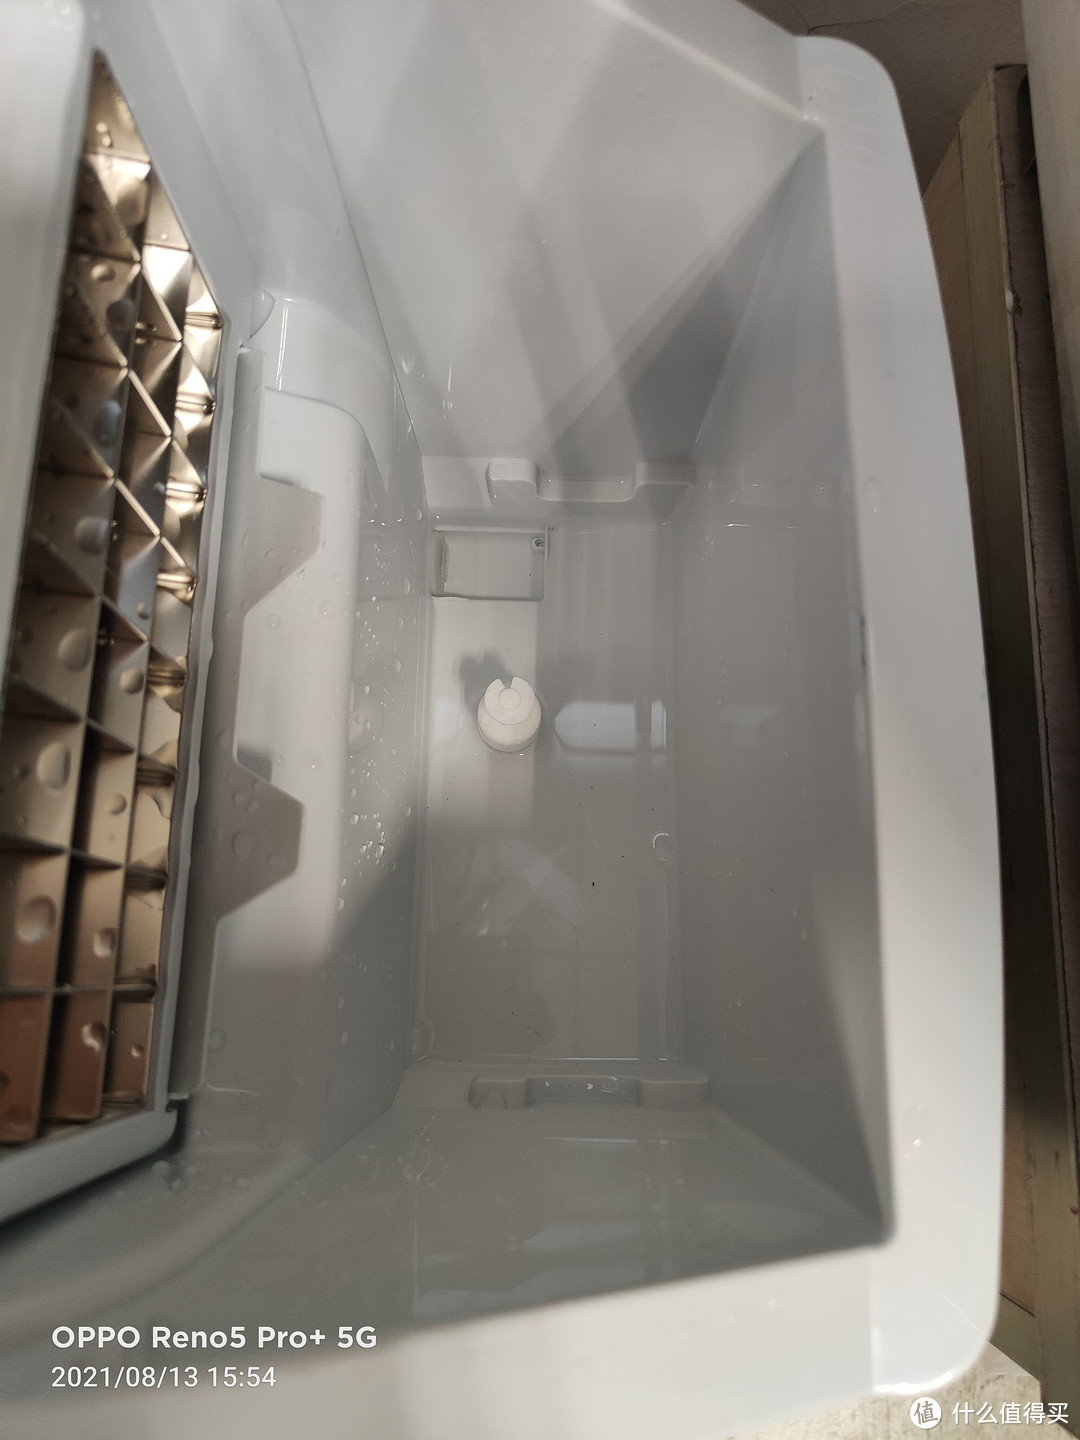 终于冰块自由了~~入手方冰制冰机~~Hicon惠康制冰机25kg